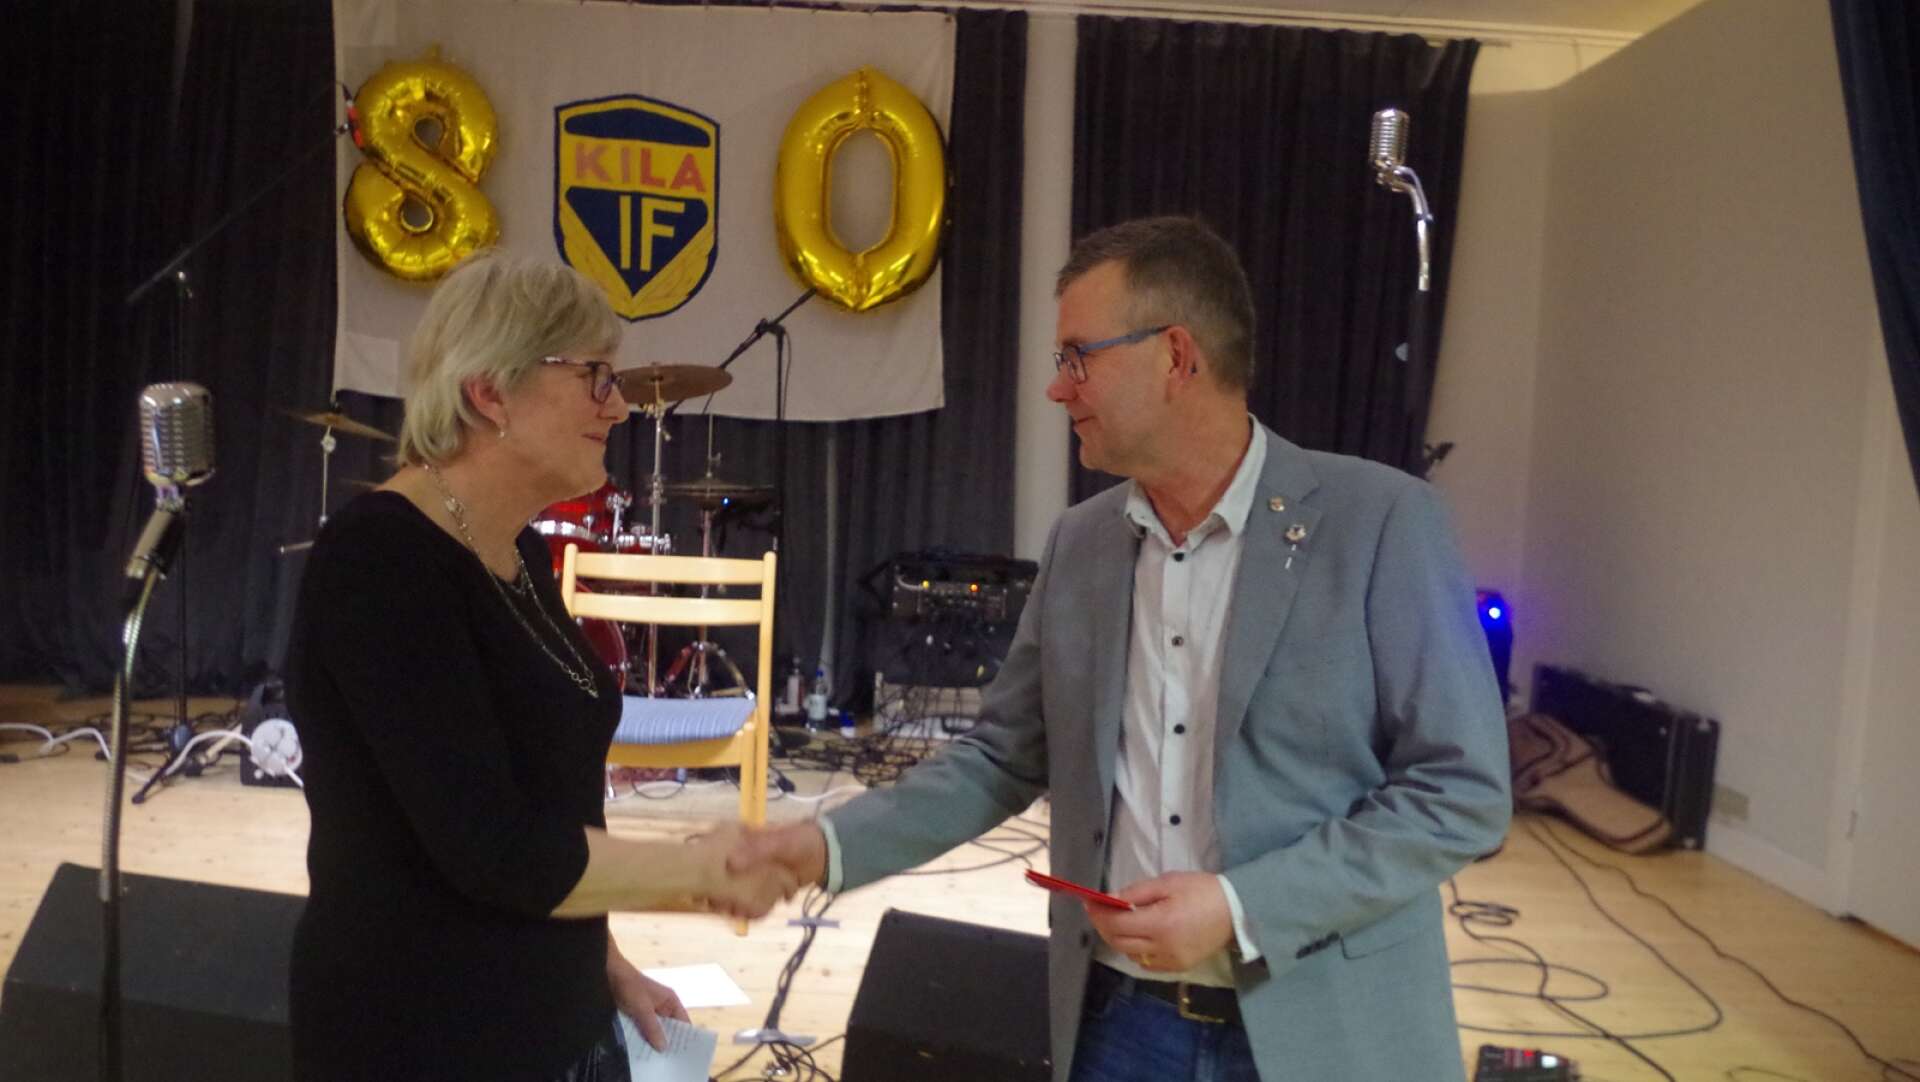 Marianne Thunholm gratulerade från Kila Församling